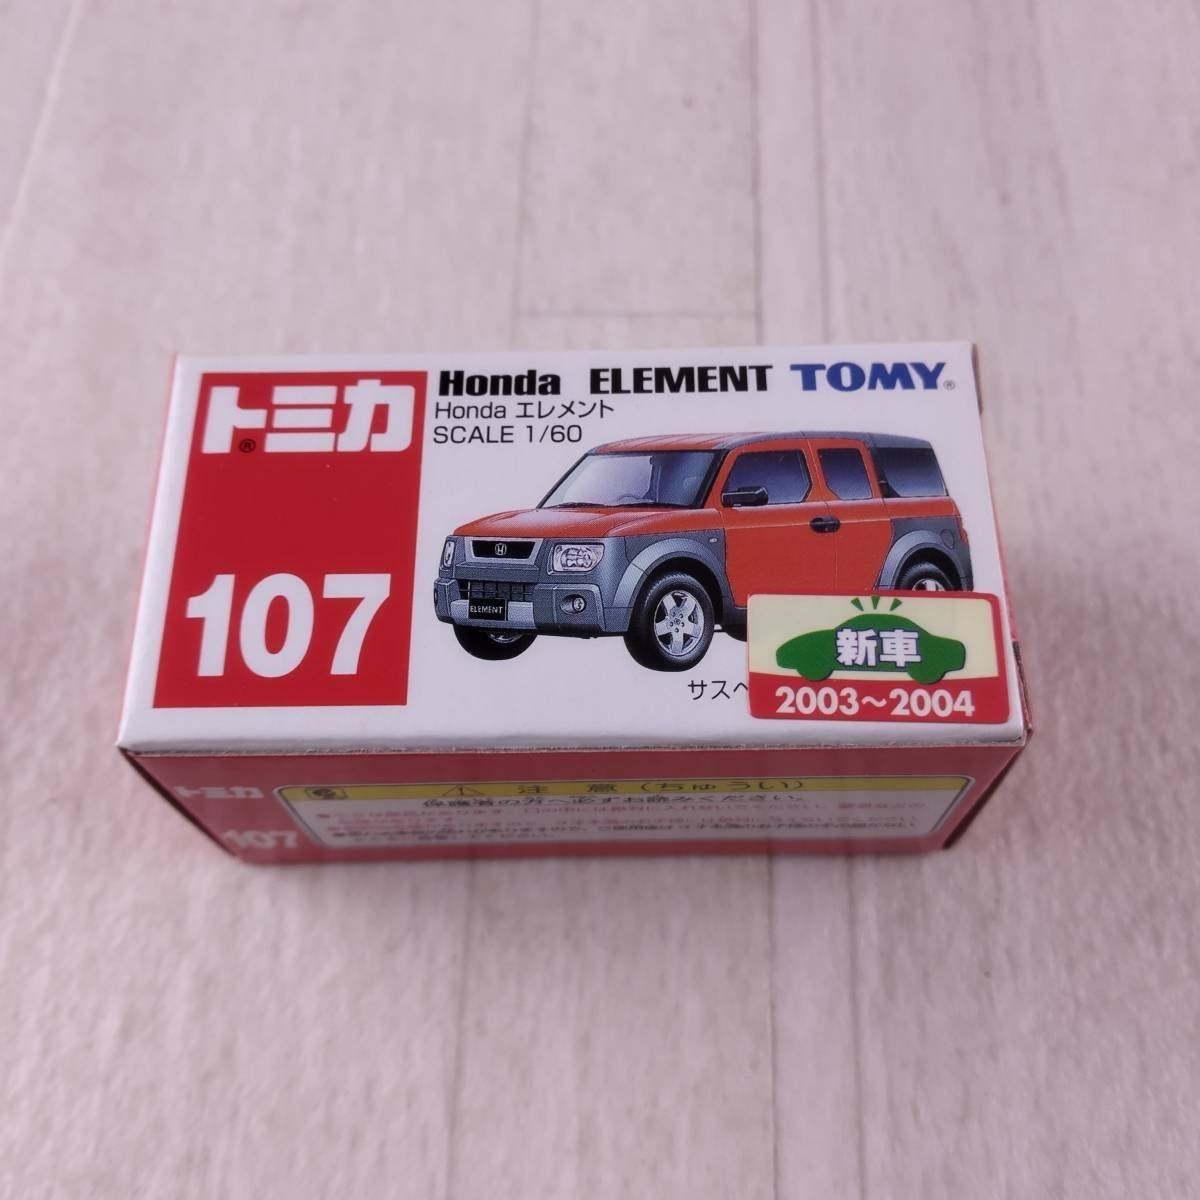 2T2 トミカ 1/60 Honda エレメント オレンジ×グレー トミカ No.107の画像1